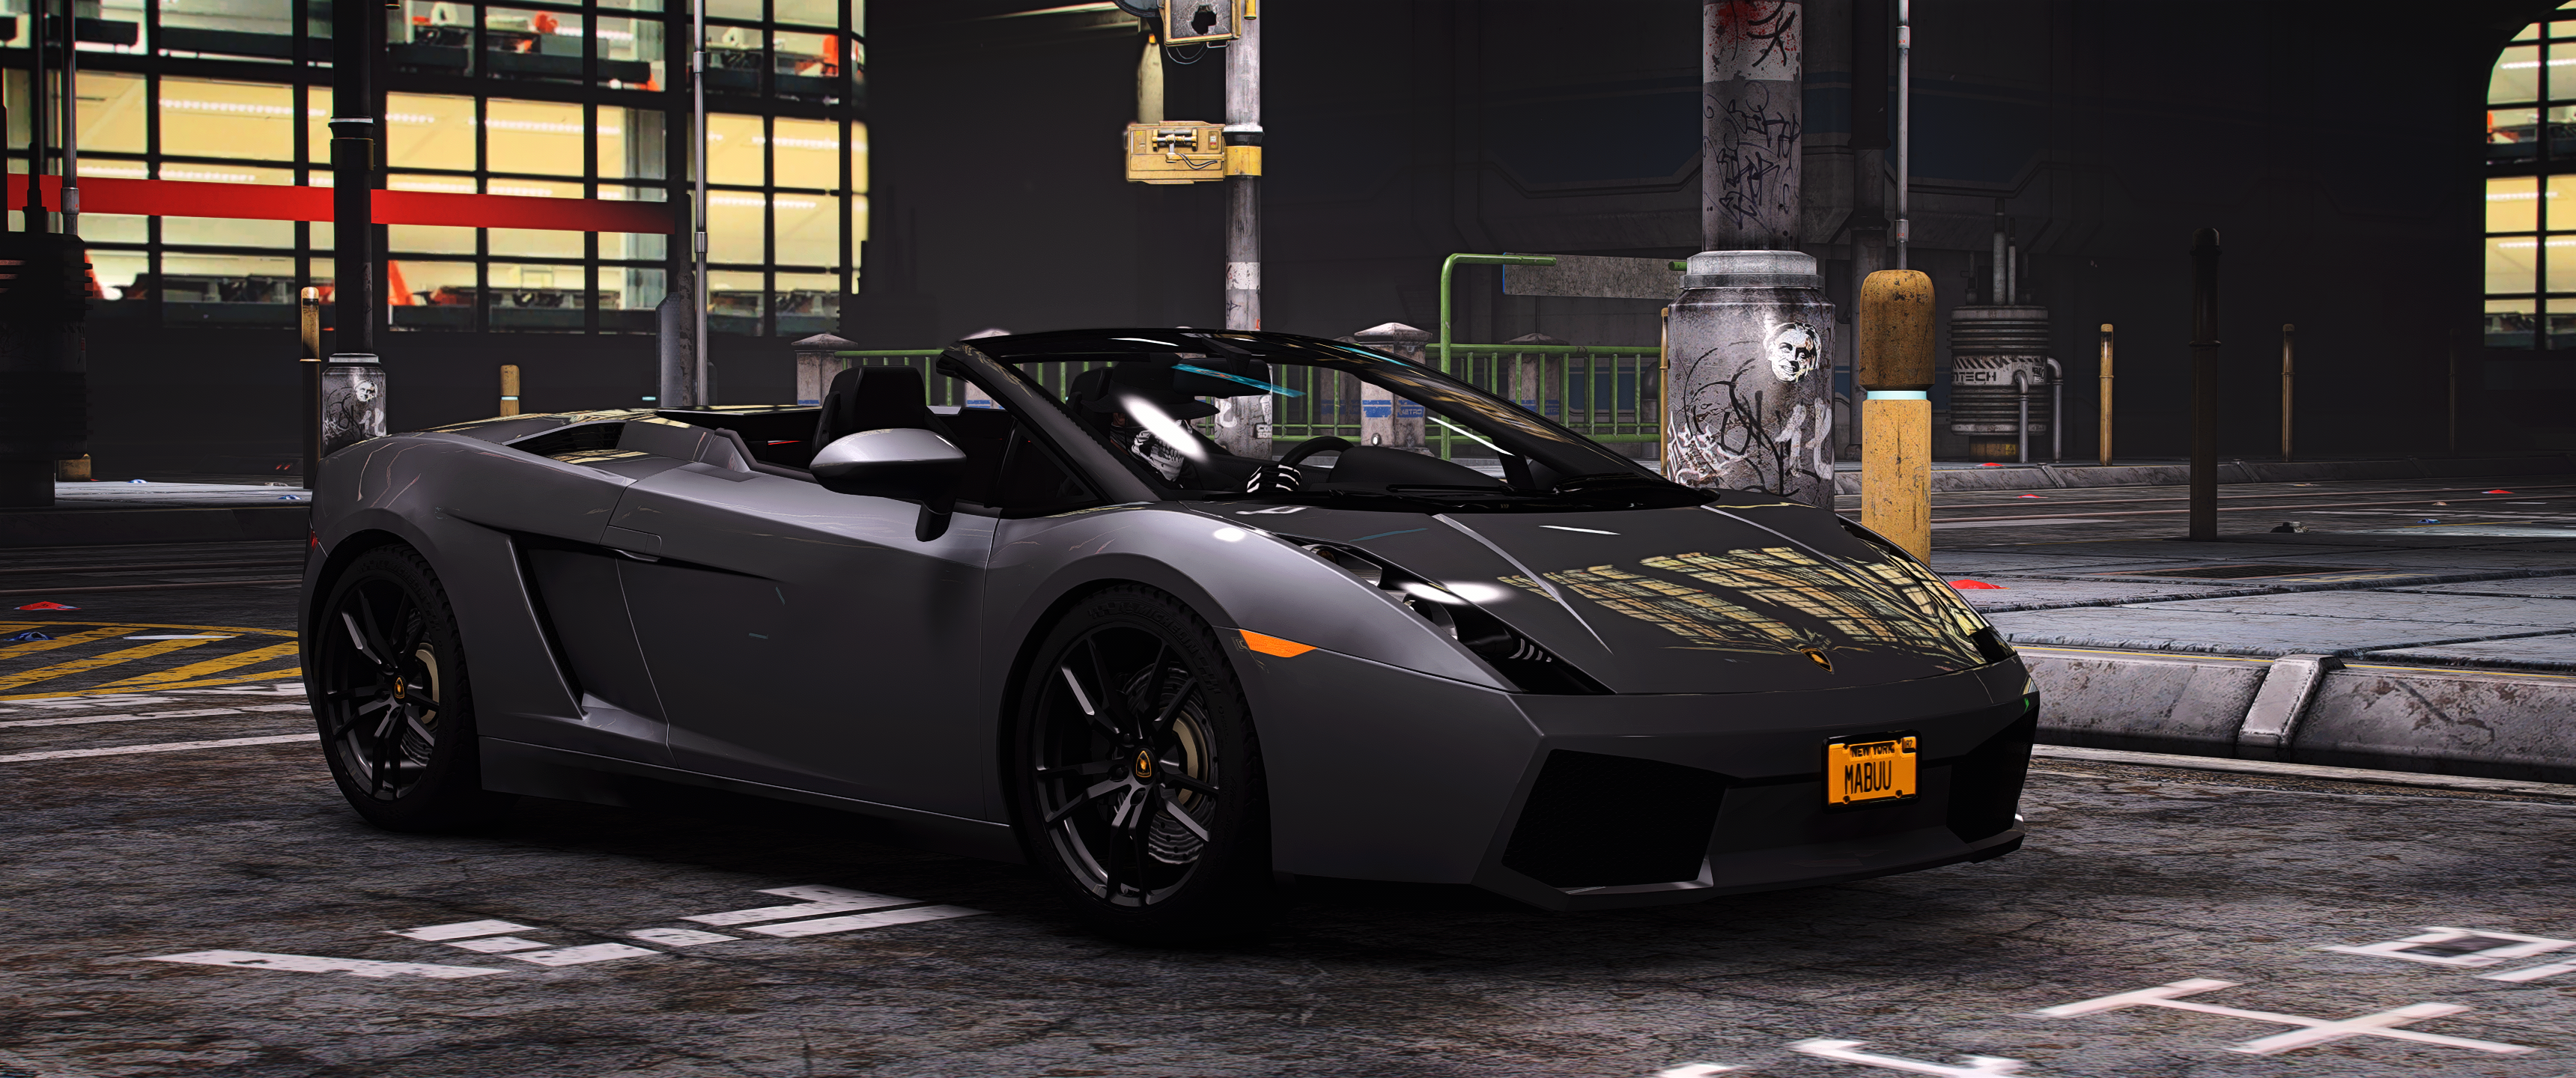 【回帖免费】2005 Lamborghini Gallardo Spyder-FiveM模组网